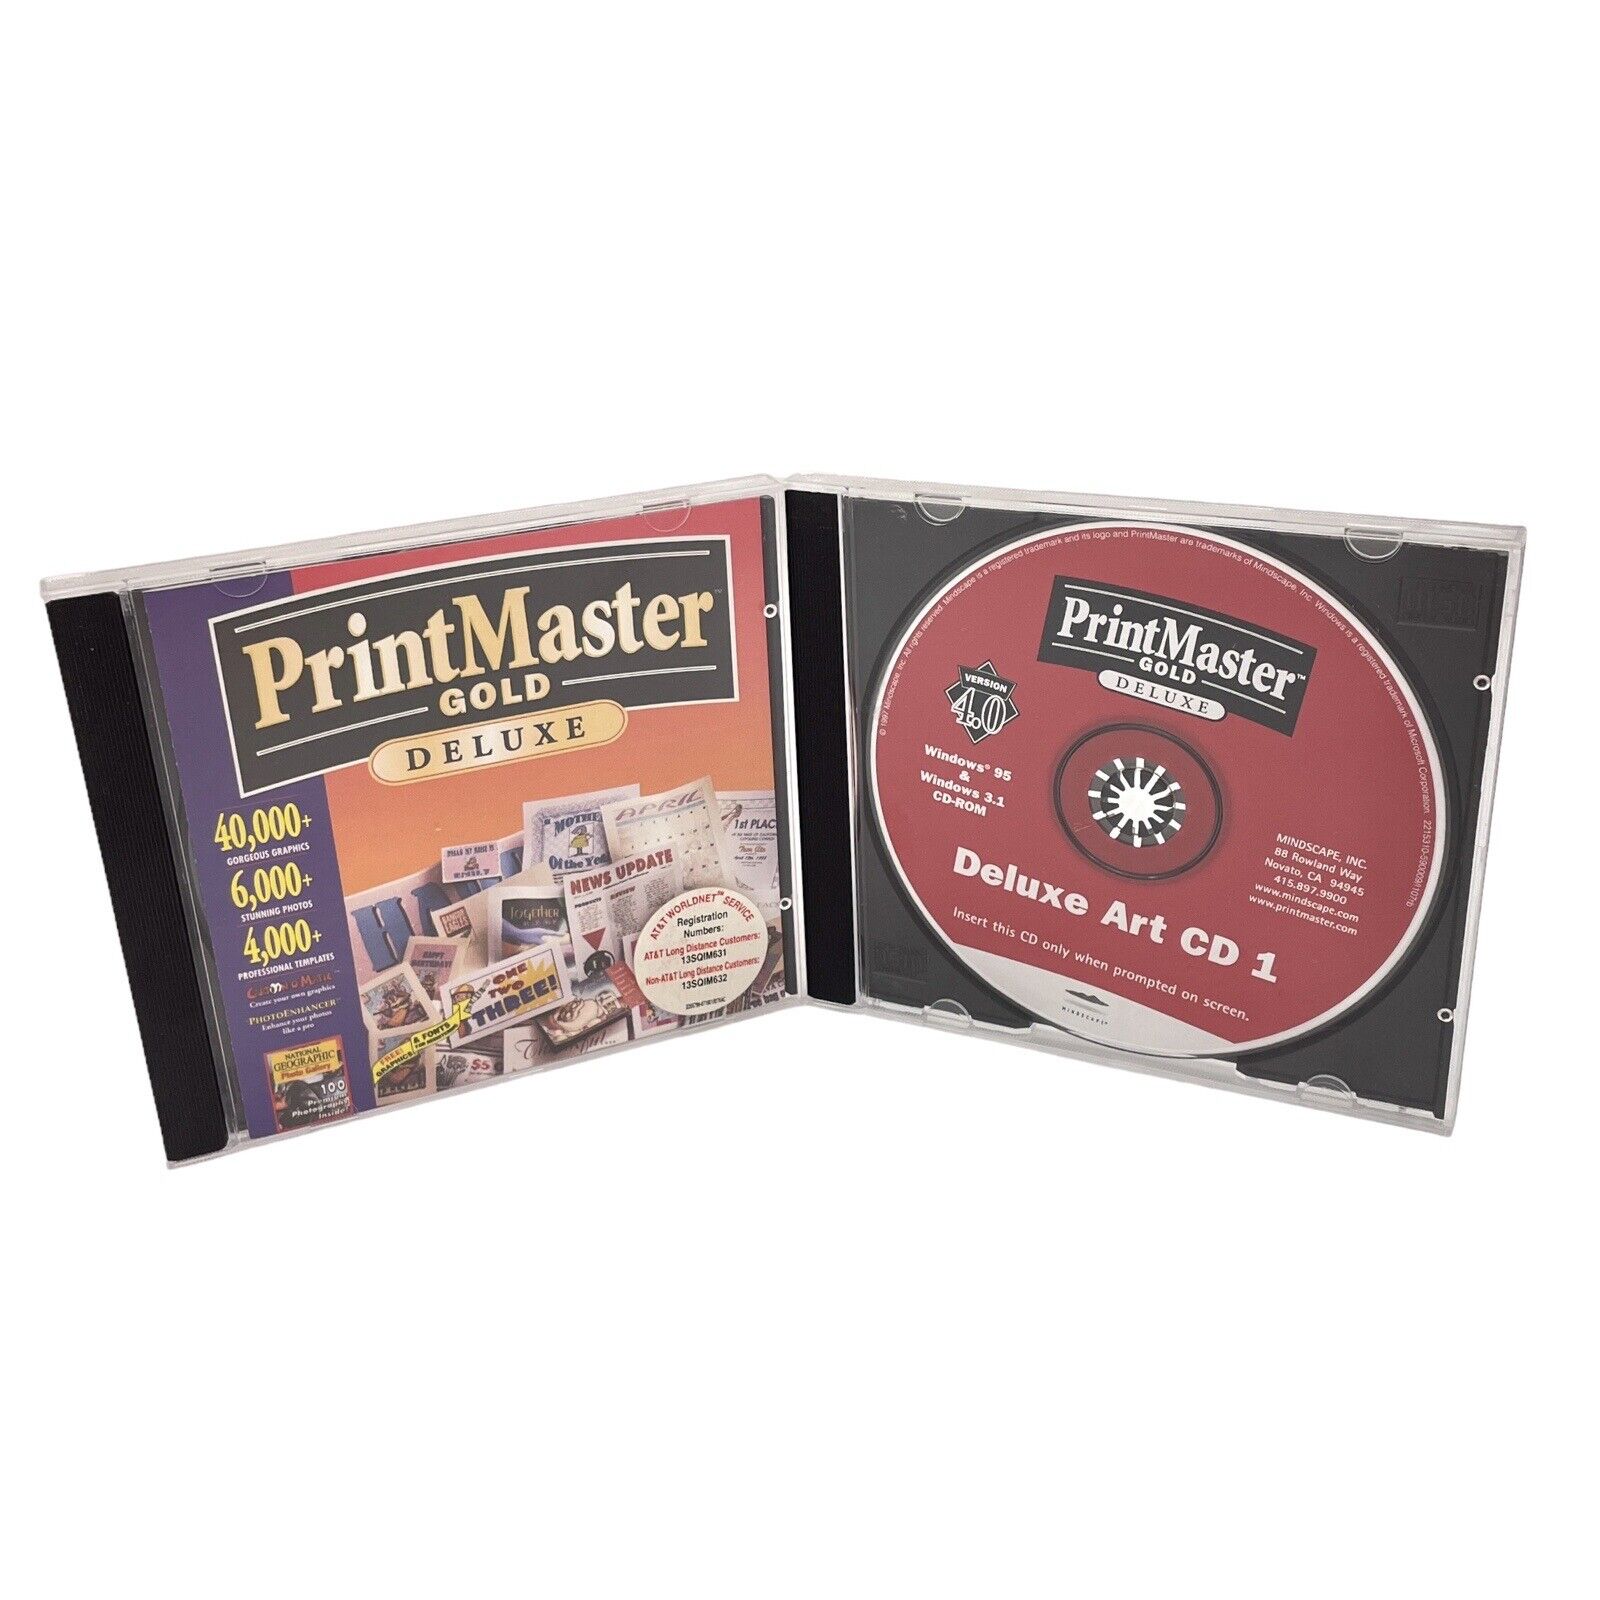 Vtg 1997 PrintMaster Gold Deluxe Version 4.0 Program & Art CD-ROM WINDOWS 3.1 95